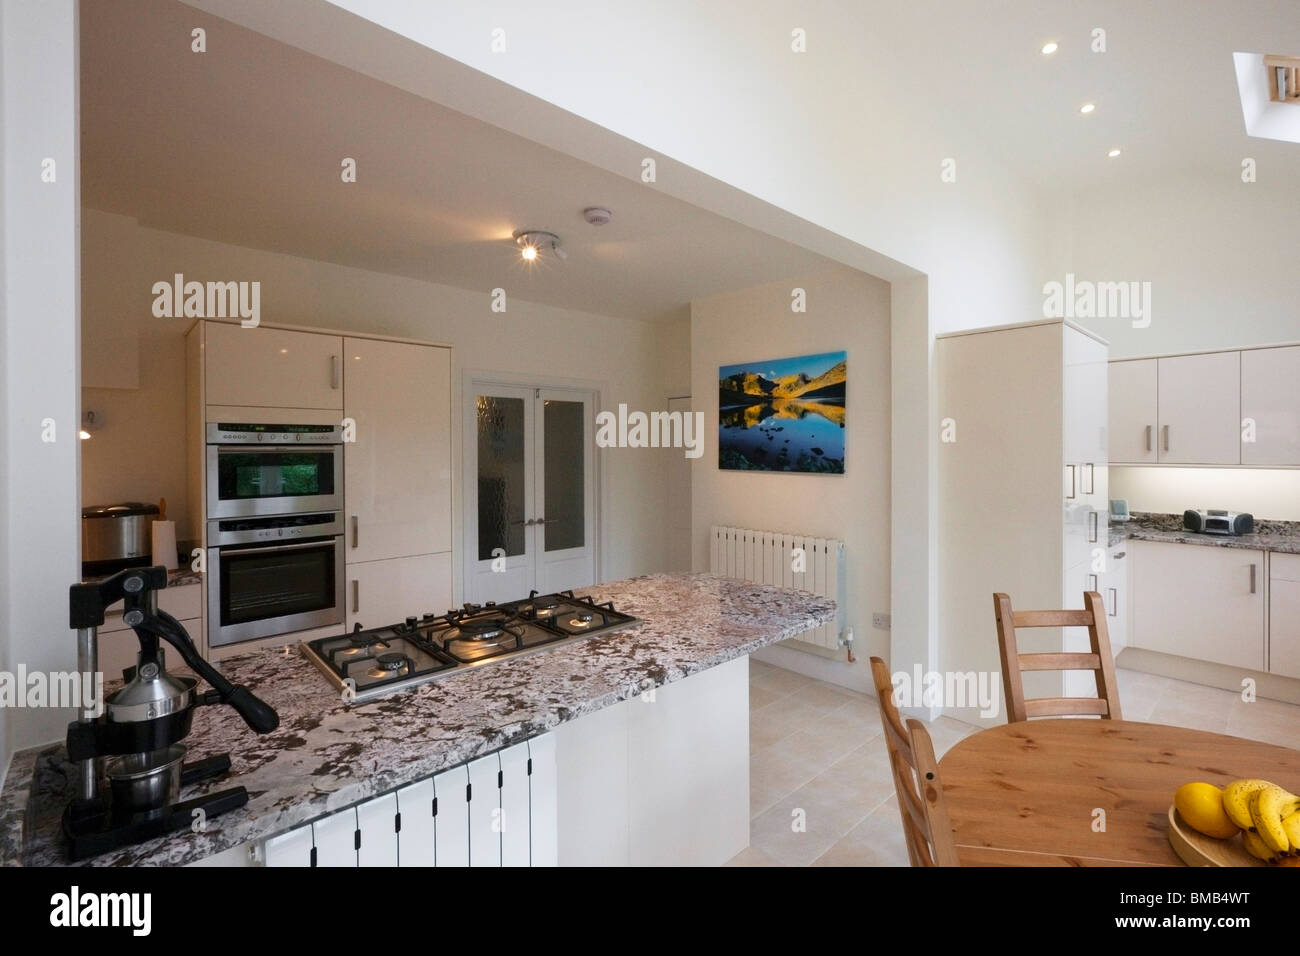 Amplio ángulo de visión de una nueva y moderna cocina con techo abovedado de extensión Foto de stock